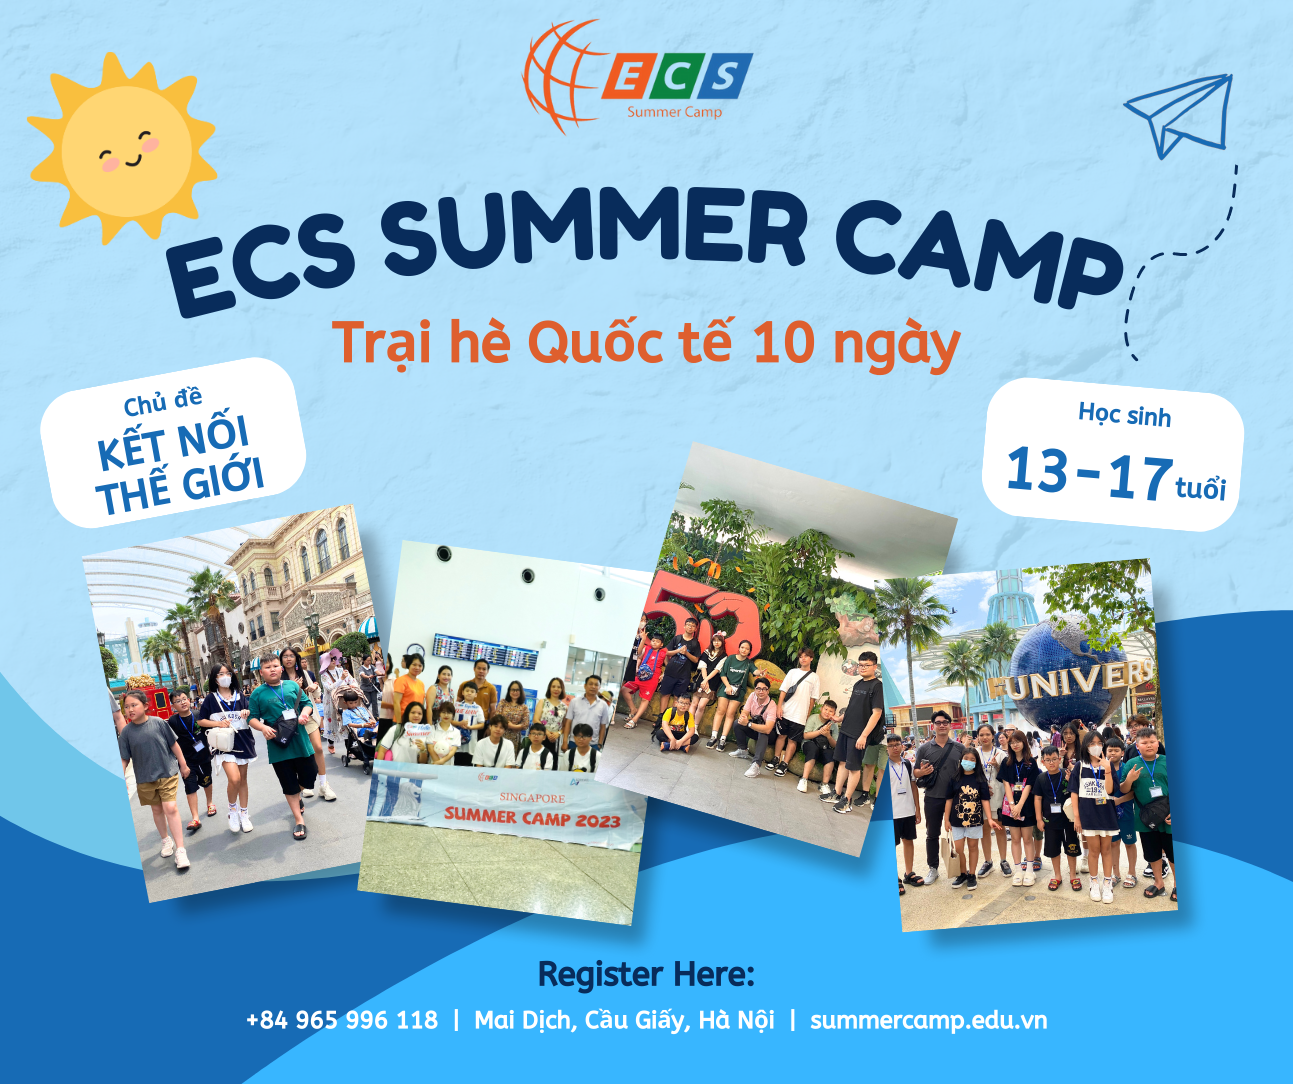 Trại hè 10 ngày “Kết nối thế giới” dành cho học sinh 13-17 tuổi